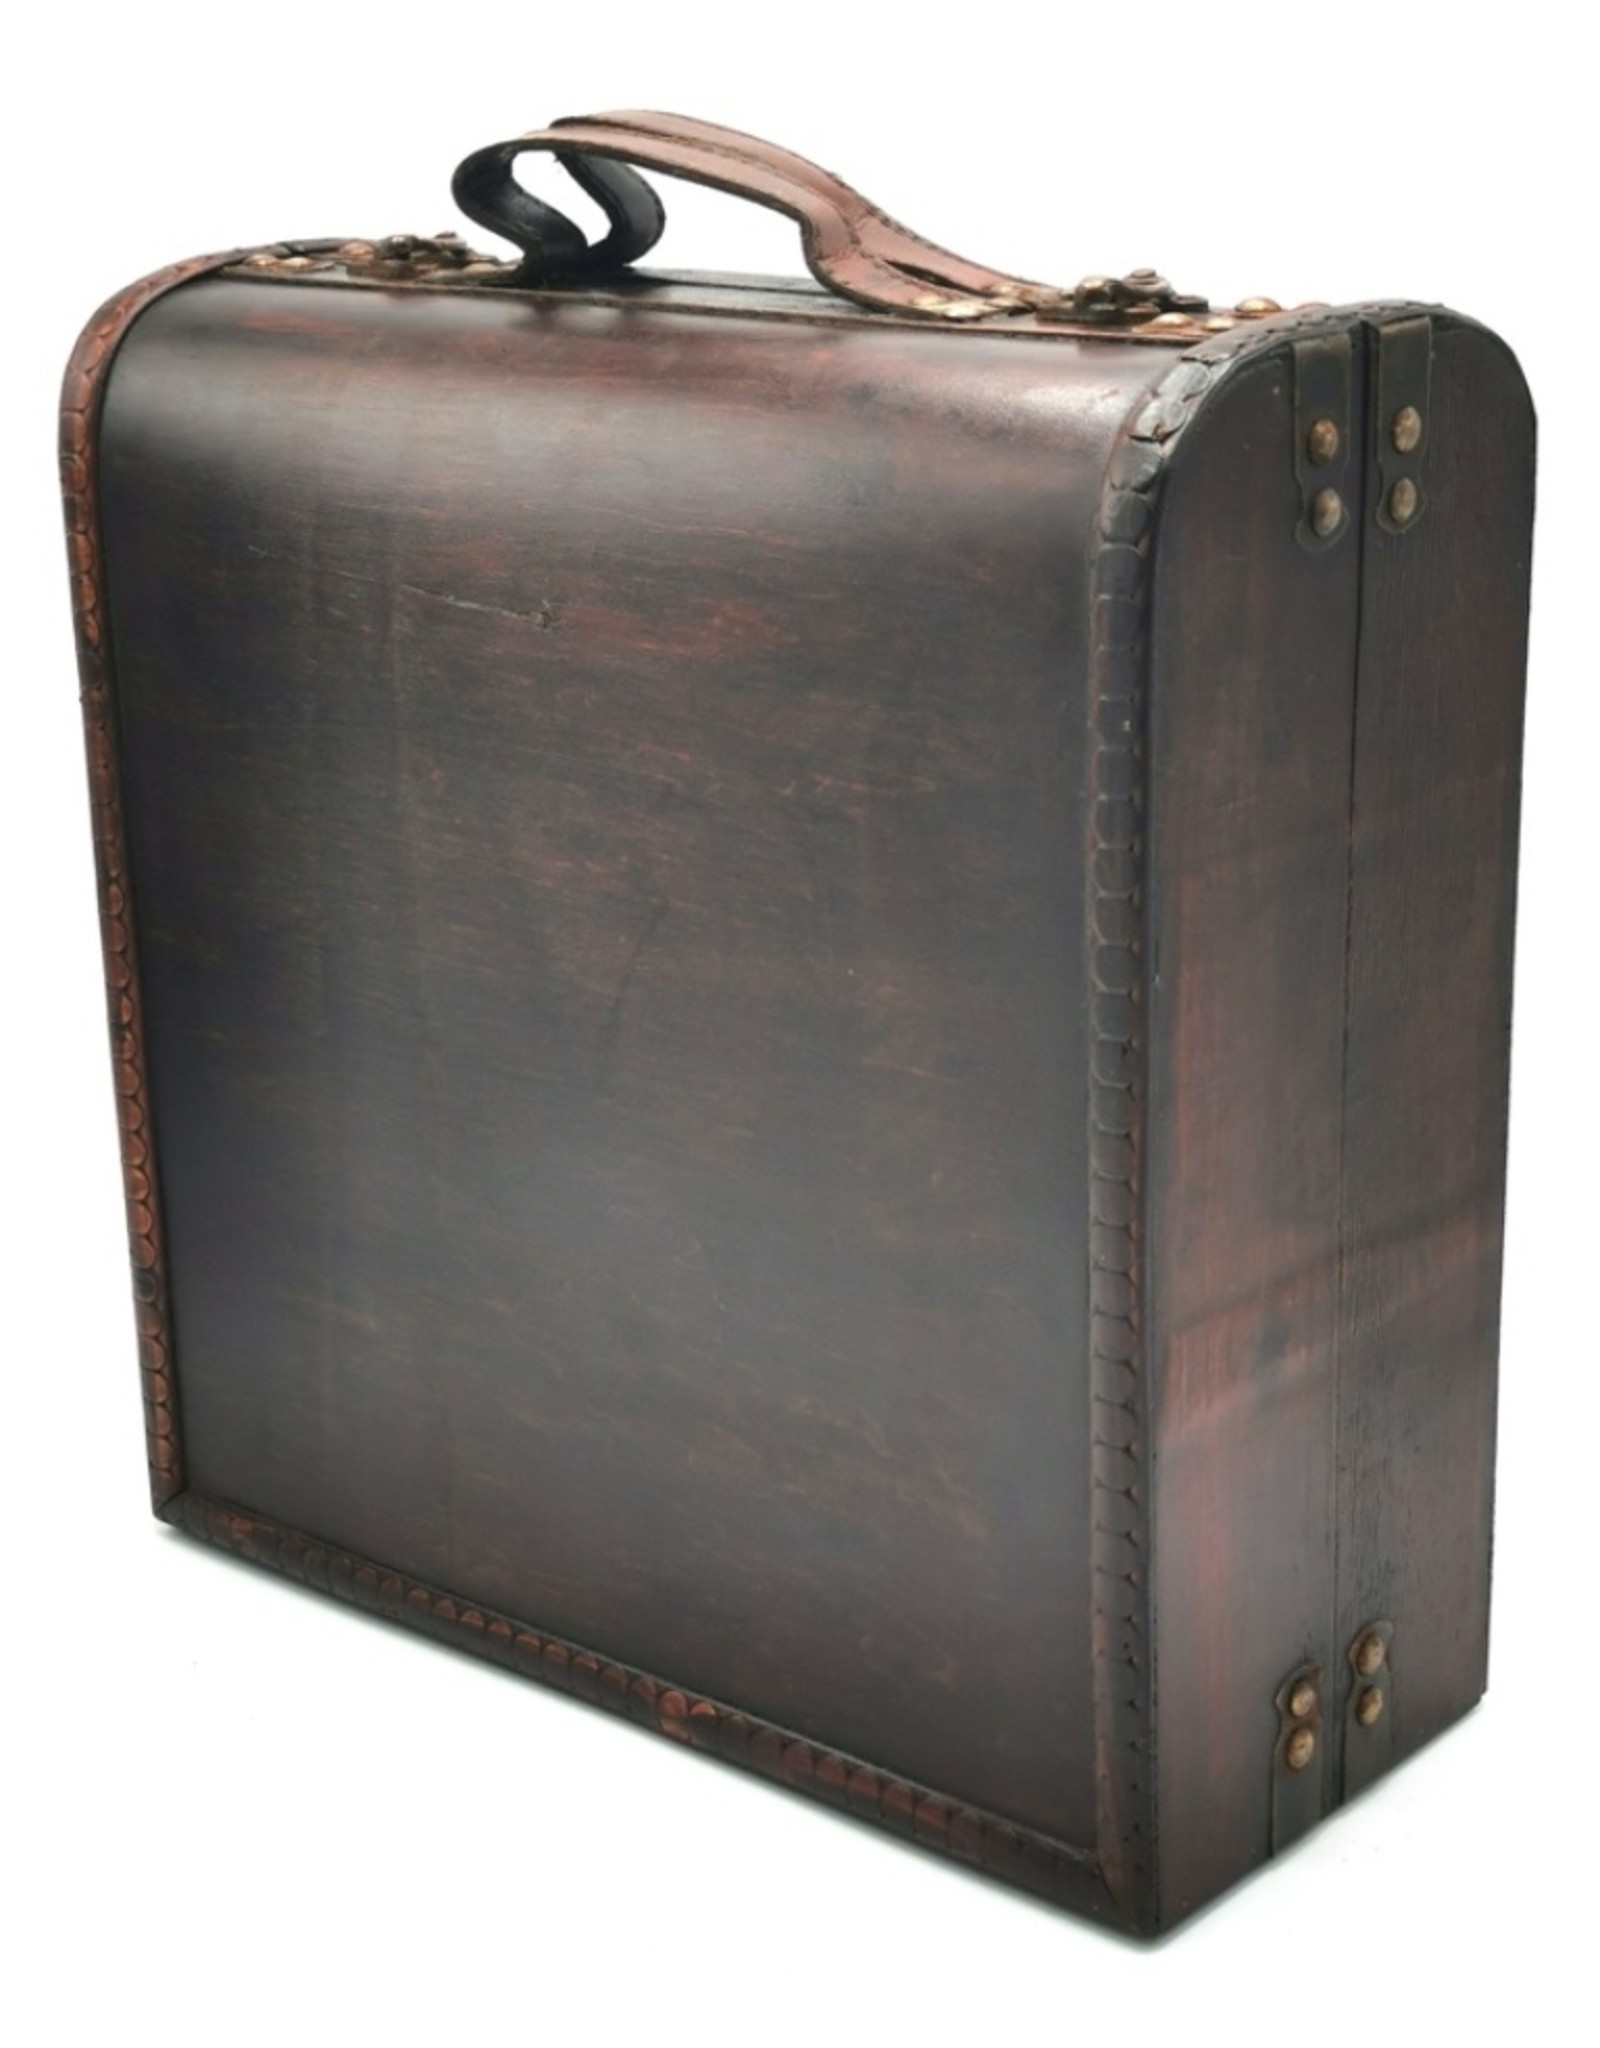 Trukado Miscellaneous - Wooden Suitcase Steampunk - Victorian L 33cm x 33cm x 13cm